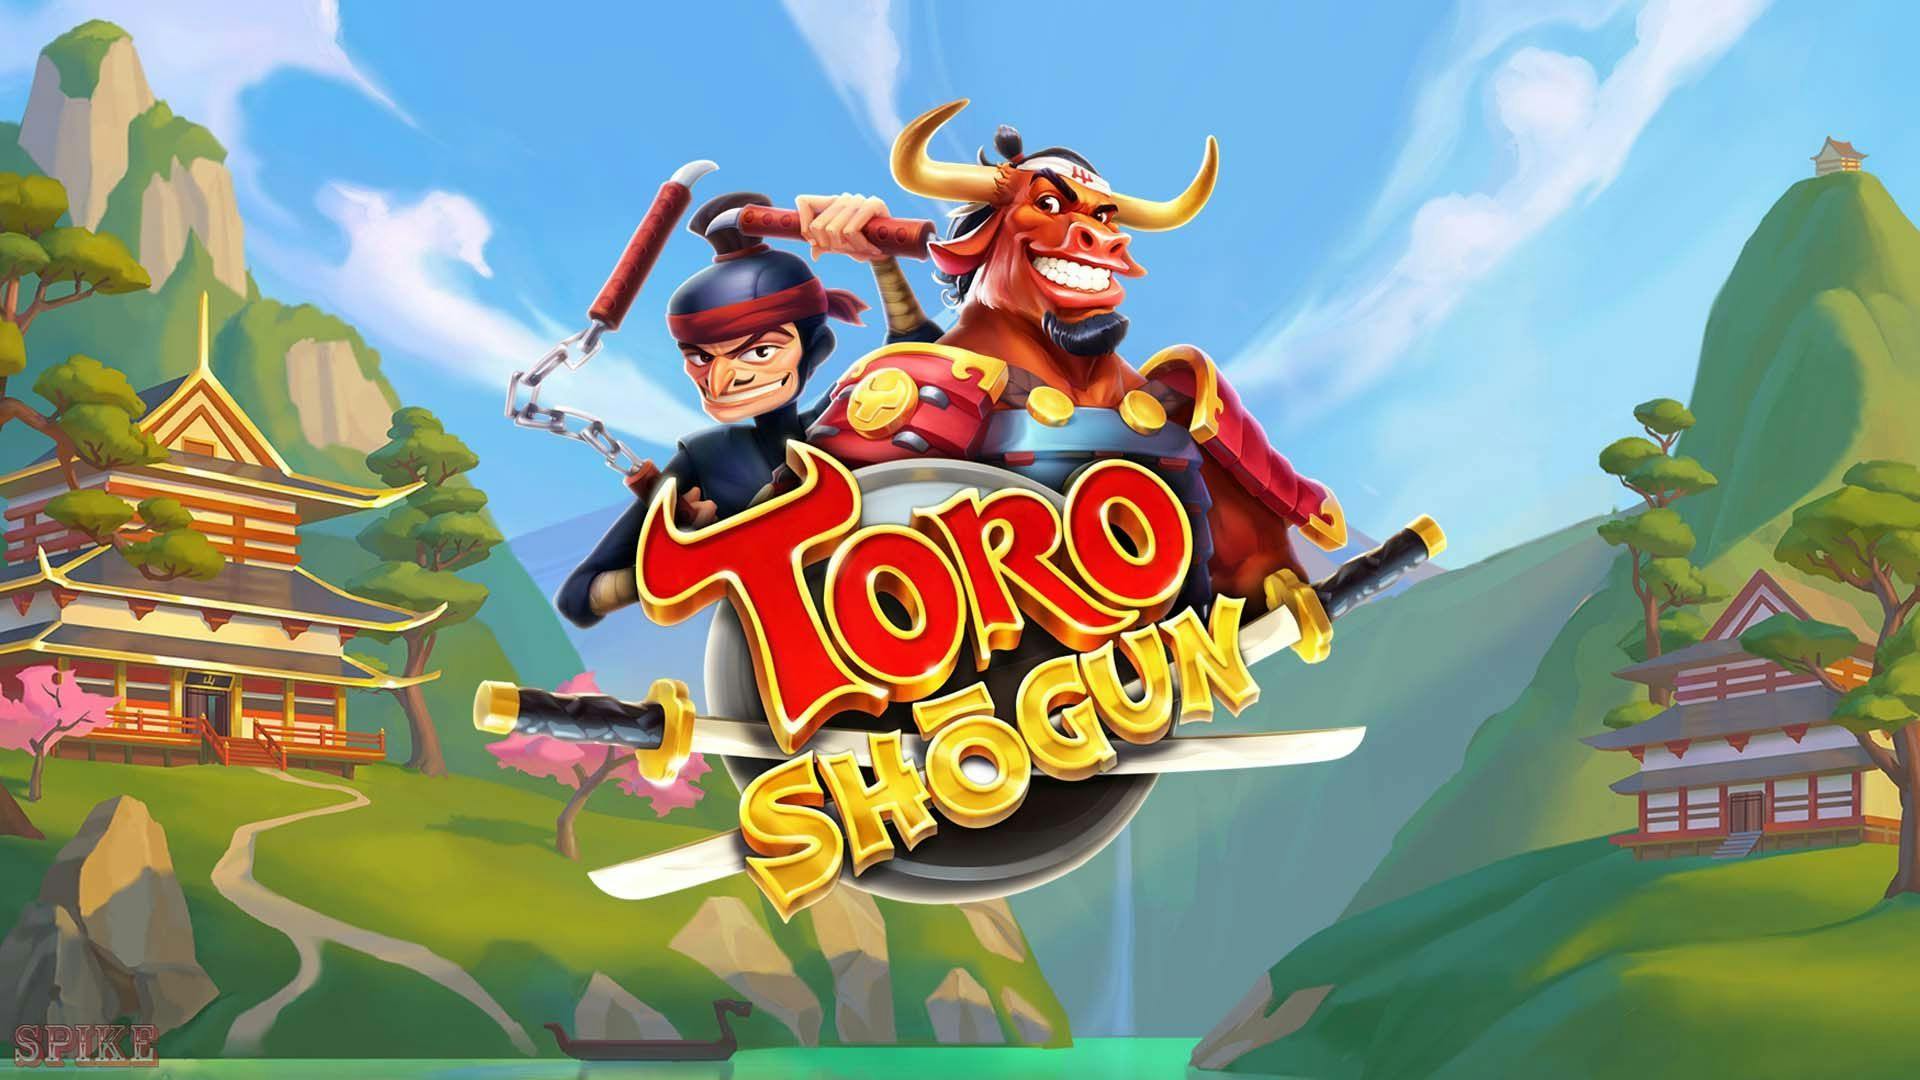 Toro Shogun Slot Gratis